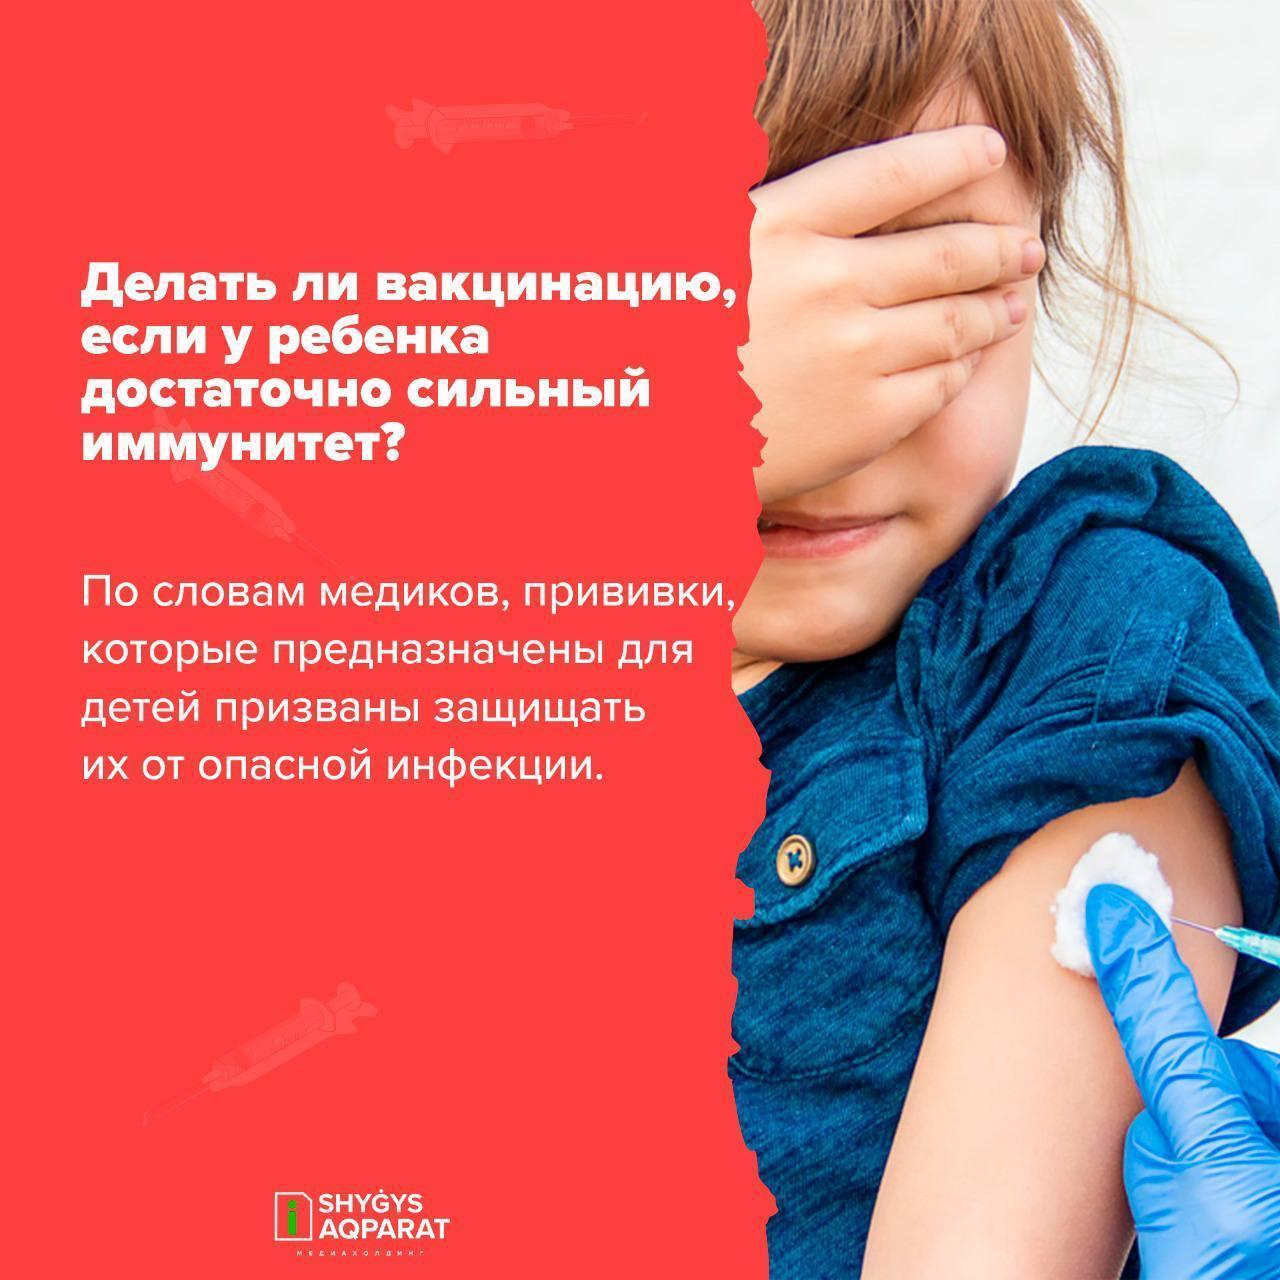 Вопросы и ответы о вакцинации детей.